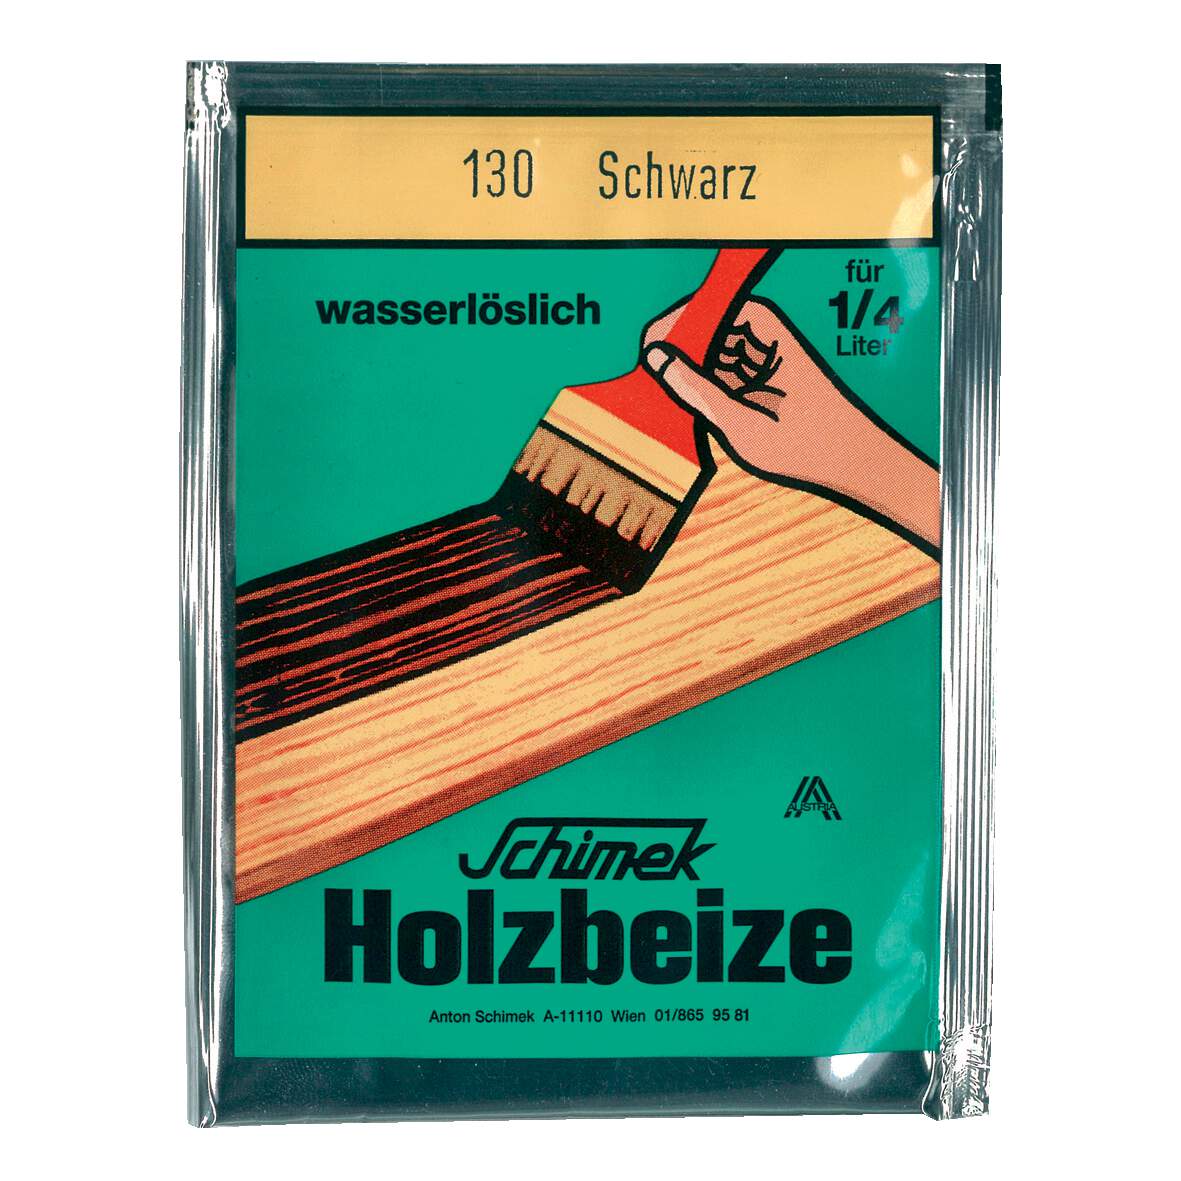 1216642 - Holzbeize wasserlöslich